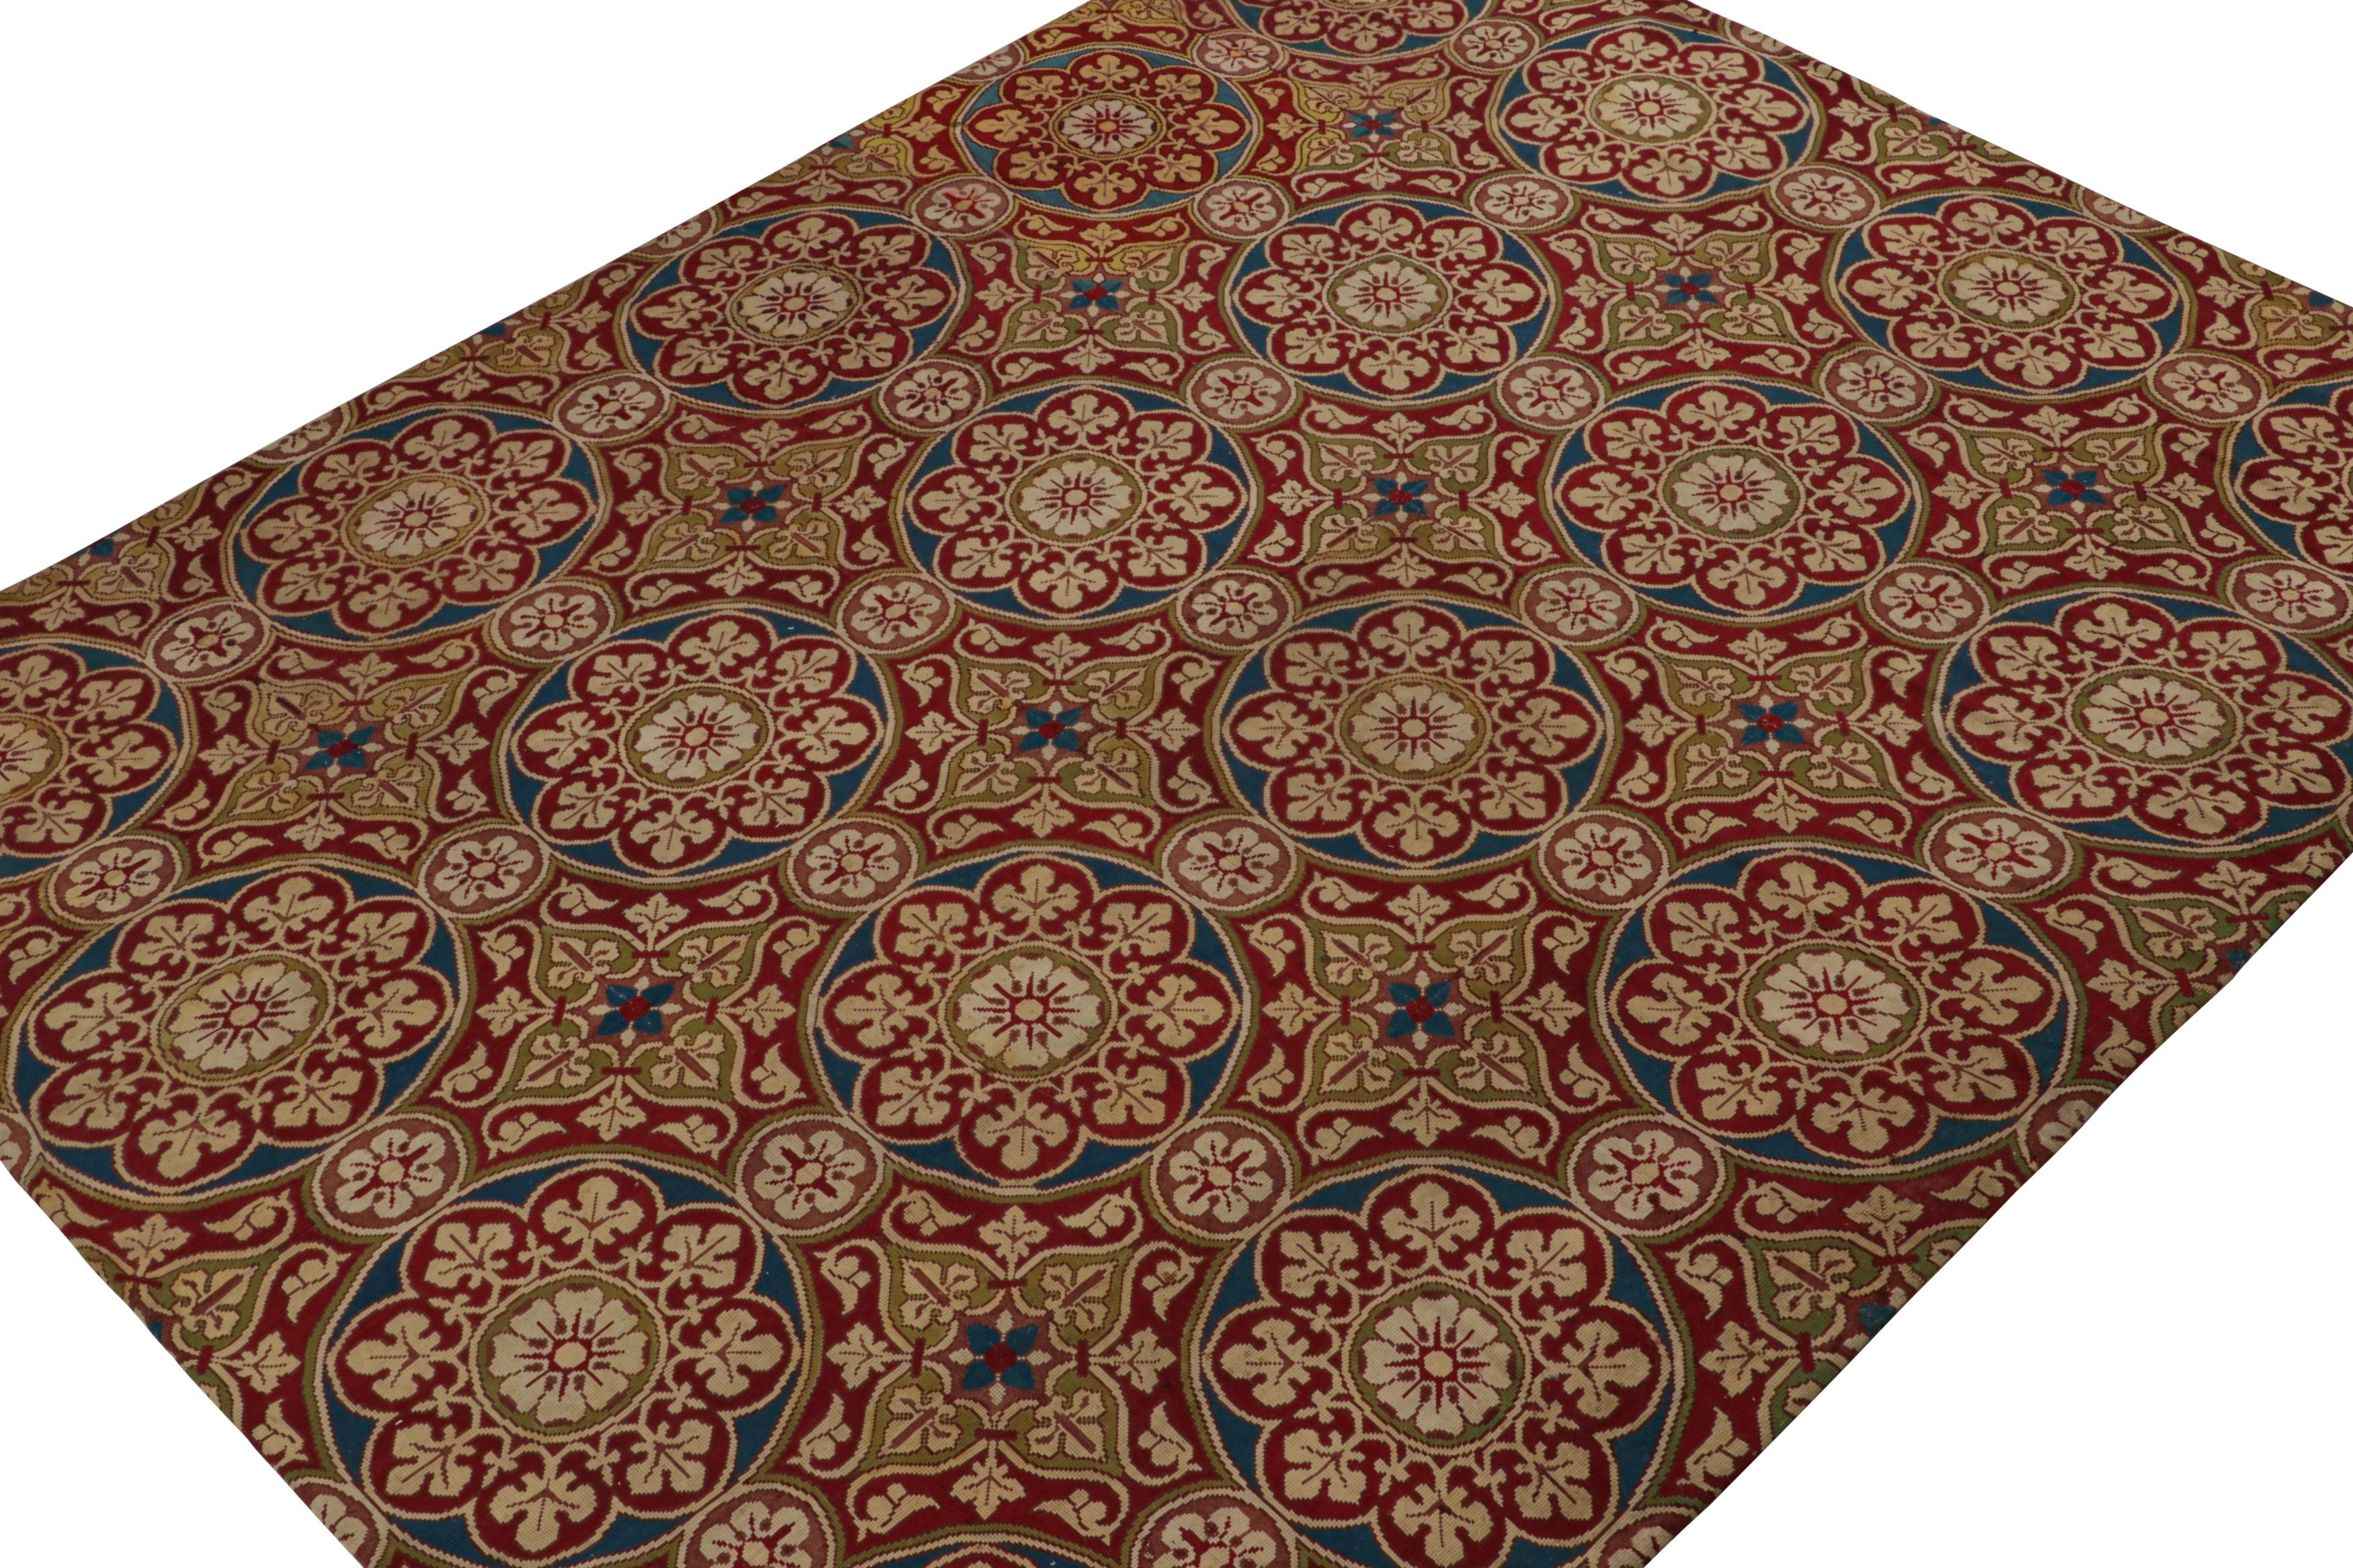 Handgewebt in Wolle und stammt aus Frankreich ca. 1920-1930, diese 9x11 antiken Französisch Needlepoint Teppich verfügt über ein rotes Feld und floralen Medaillons in marineblau, Chartreuse grün und beige Noten.

Über das Design: 

Nadelspitzen sind